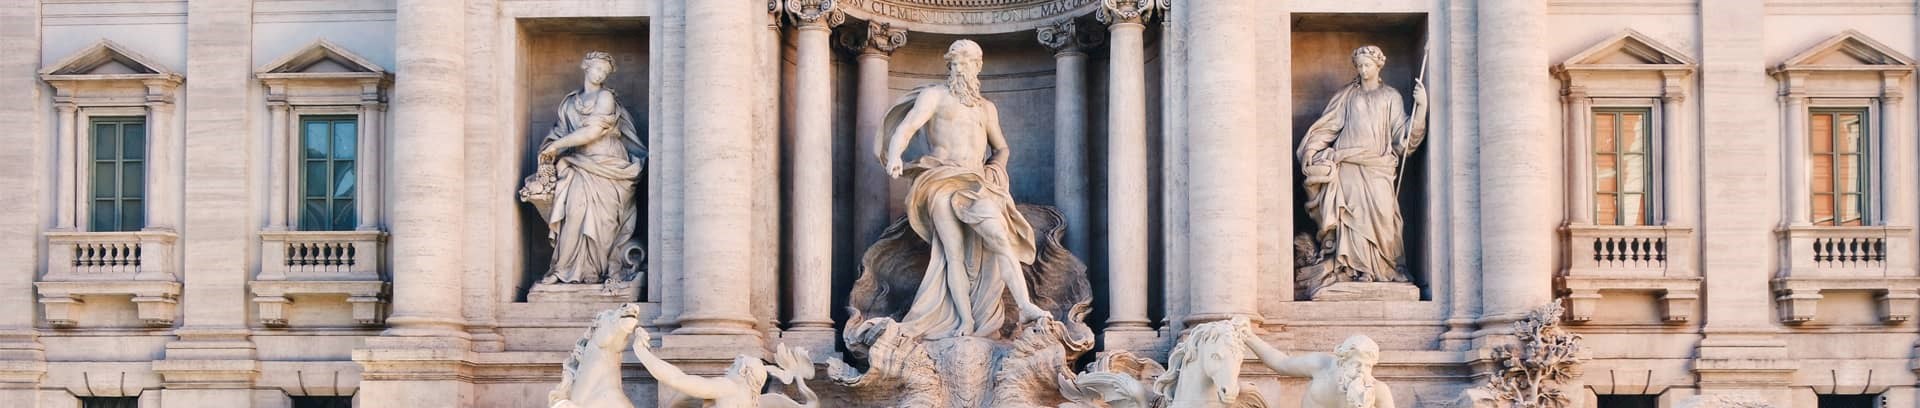 Rom, fontæne, italiensk kursus i fof århus